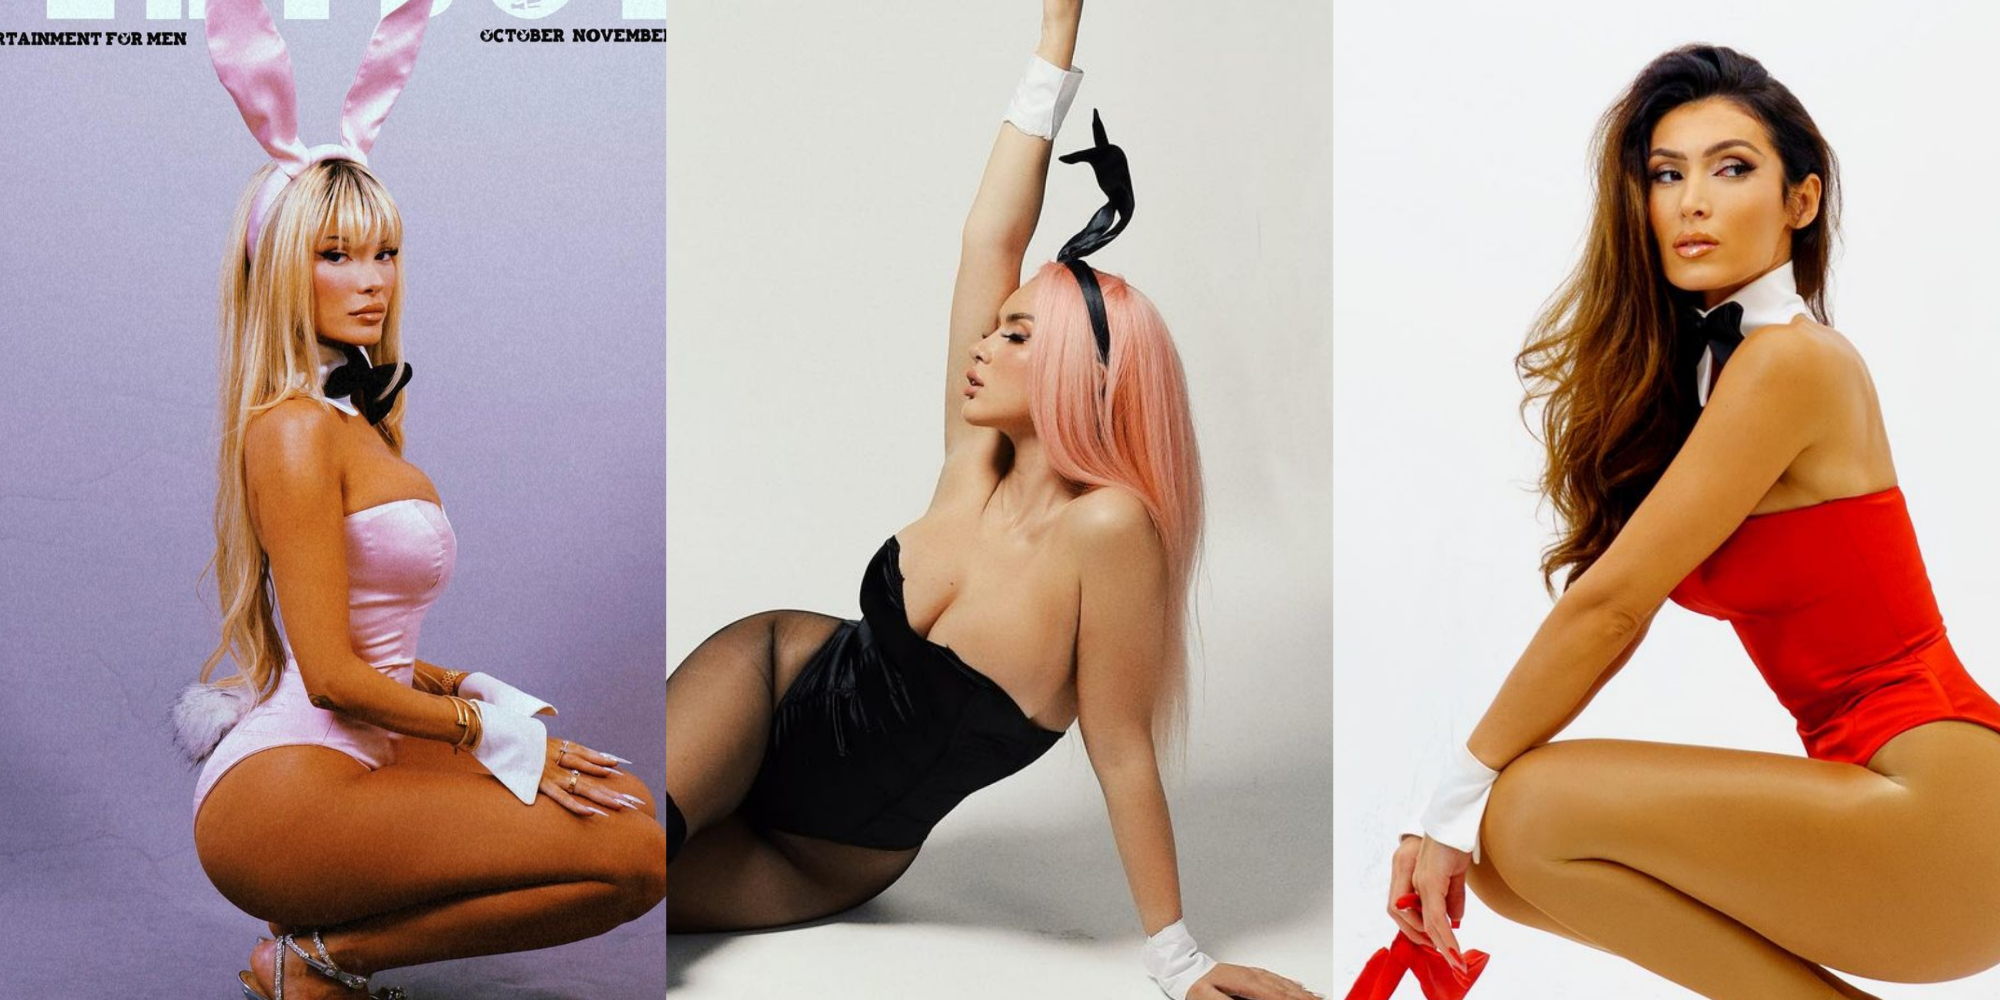 U “maskuan” si modele të Playboy, Antonela Berisha bën “xing” me Era dhe Nora Istrefin